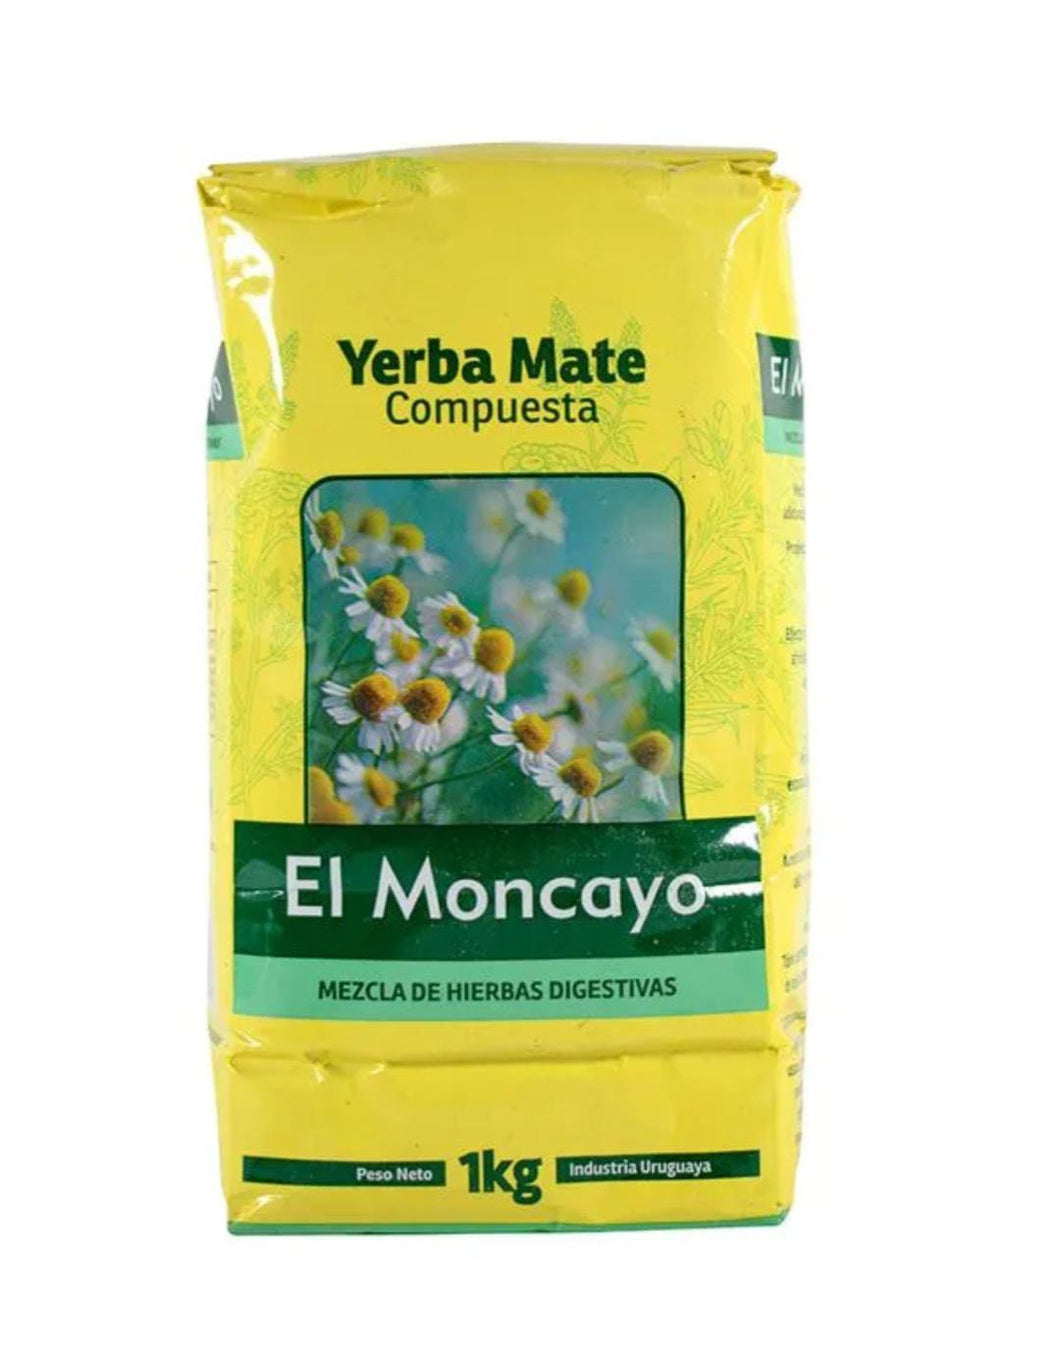 EL MONCAYO- Yerba compuesta 1 kg Mezcla de hierbas